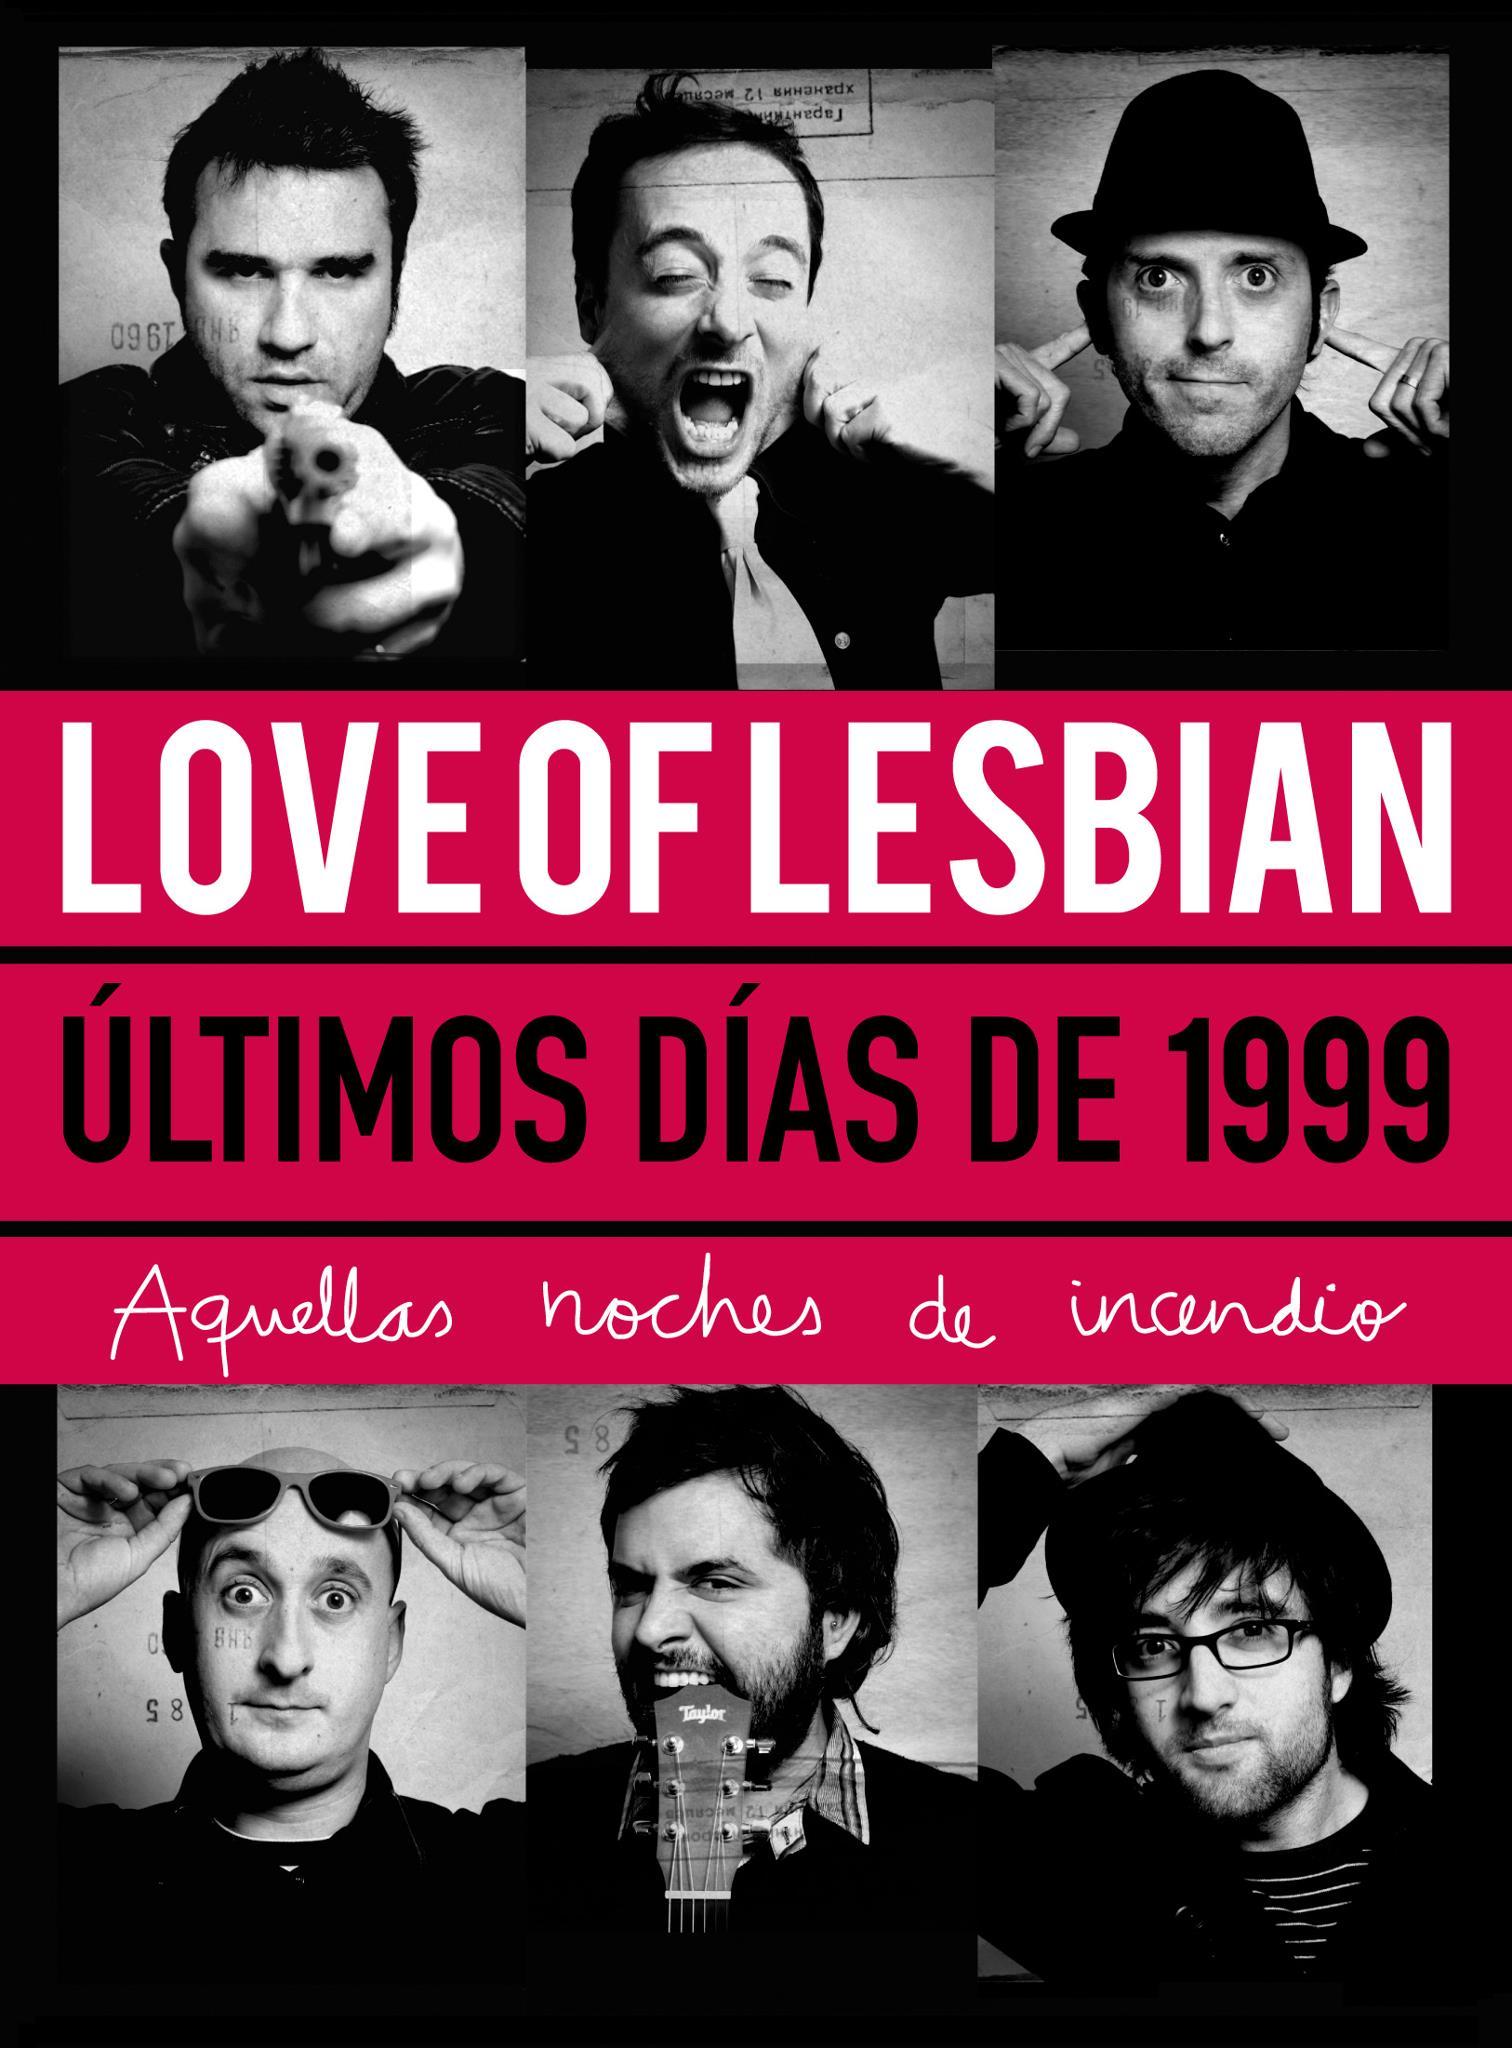 Love of Lesbian publican una reedición muy especial de su último trabajo